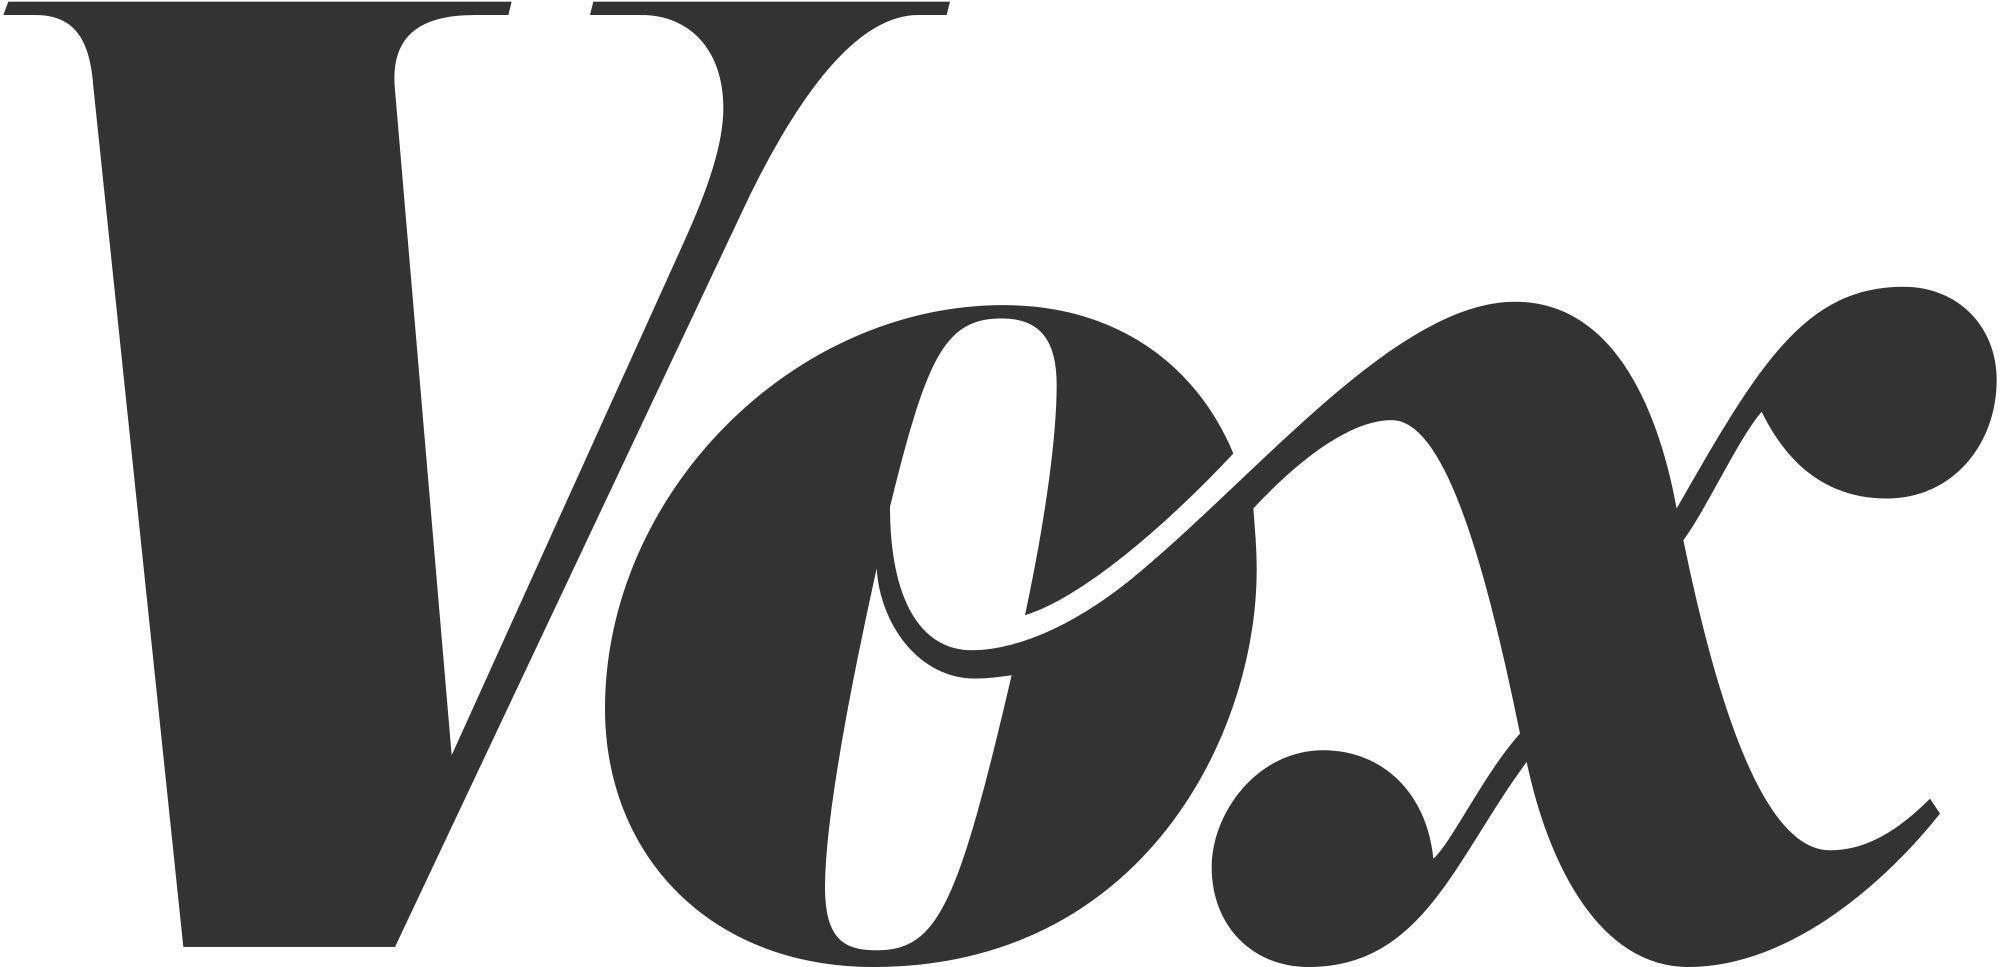 tipografía - ¿A qué categoría de fuente pertenece el logo de Vox? - Diseño gráfico ...